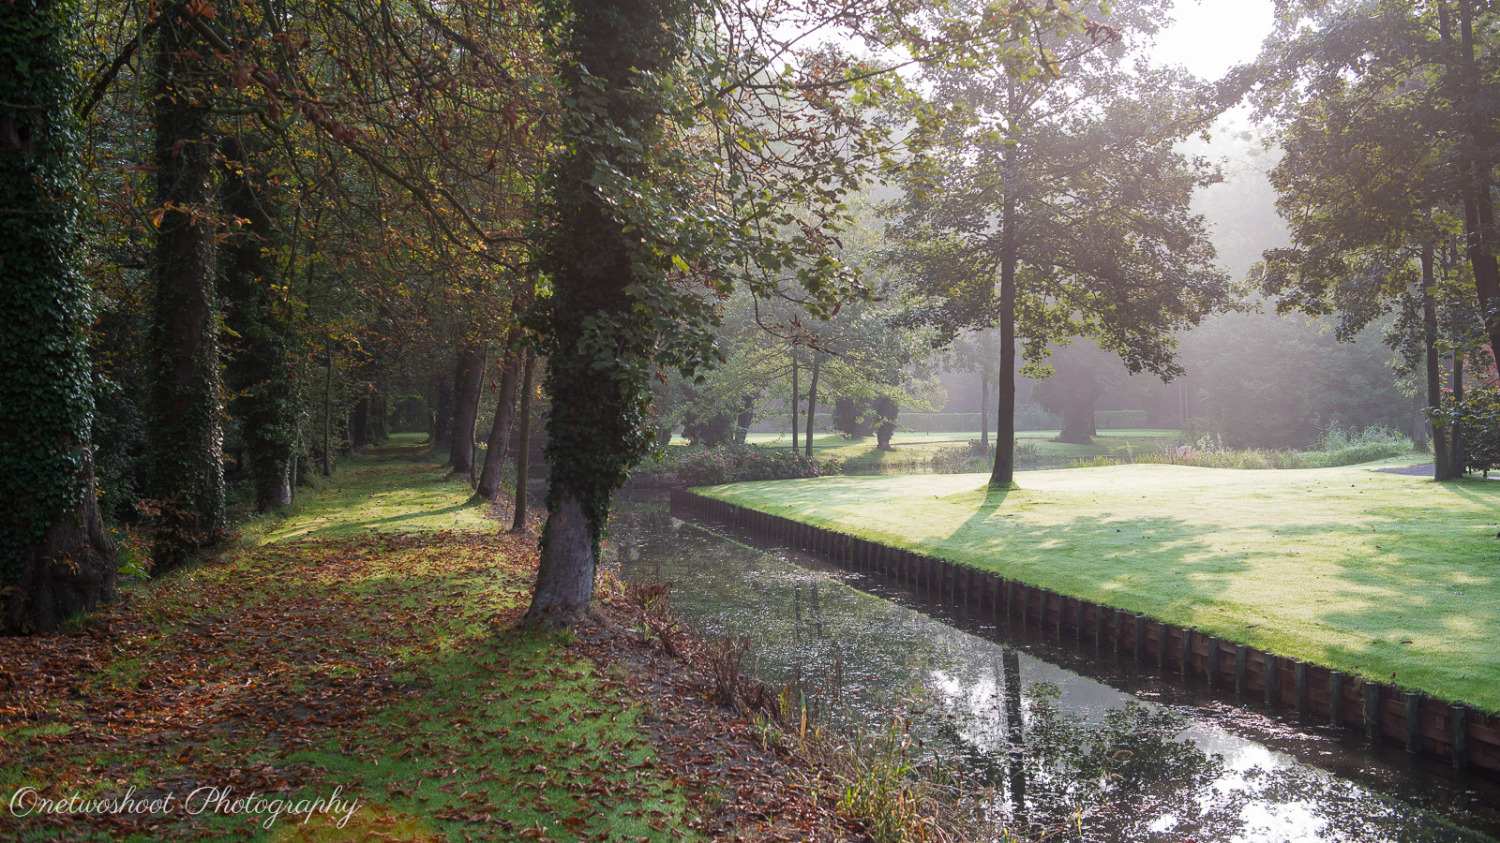 Het park van het domein 't Meerdael heeft mooie paden, graspartijen en grachten. Kortom alles voor mooie huwelijksfoto's te maken.